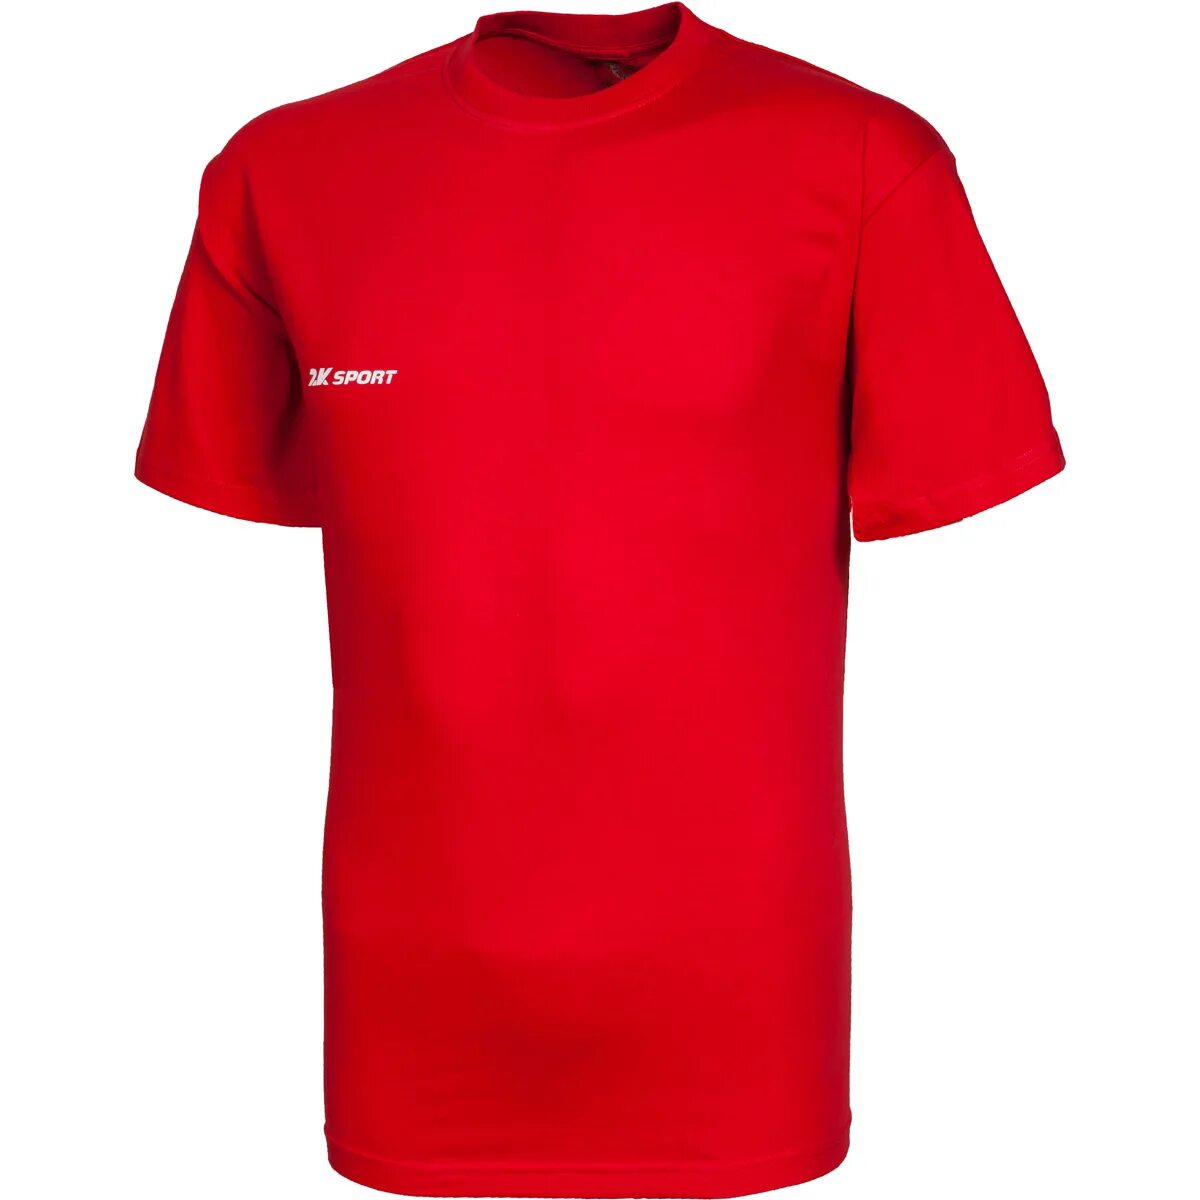 Красная футболка мужская. Футболка спортивная. Спортивные футболки мужские. Красная спортивная футболка. Красная майка купить